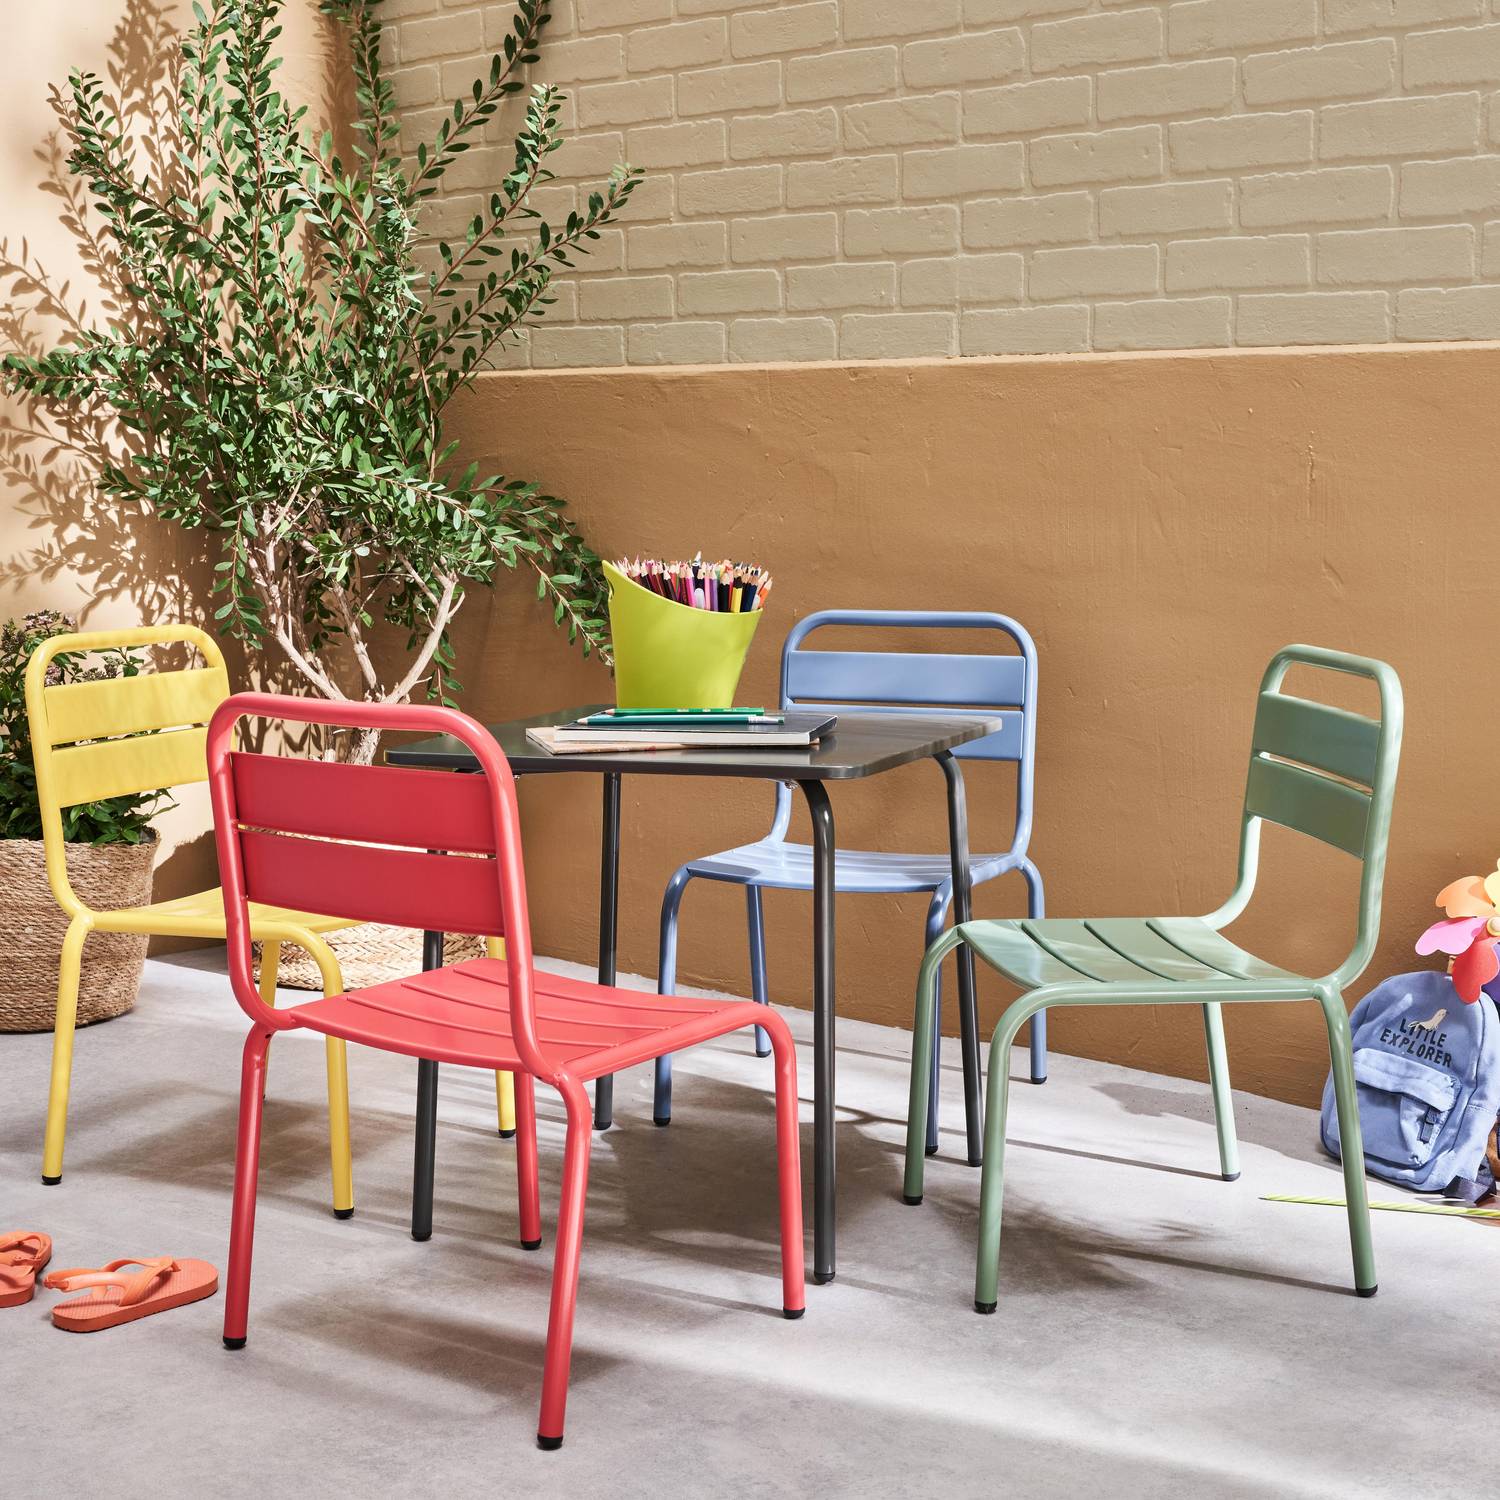 Gartengarnitur für Kinder - Anna - Mehrfarbig, 4 Plätze, Tische und Stühle, 48x48cm Photo1